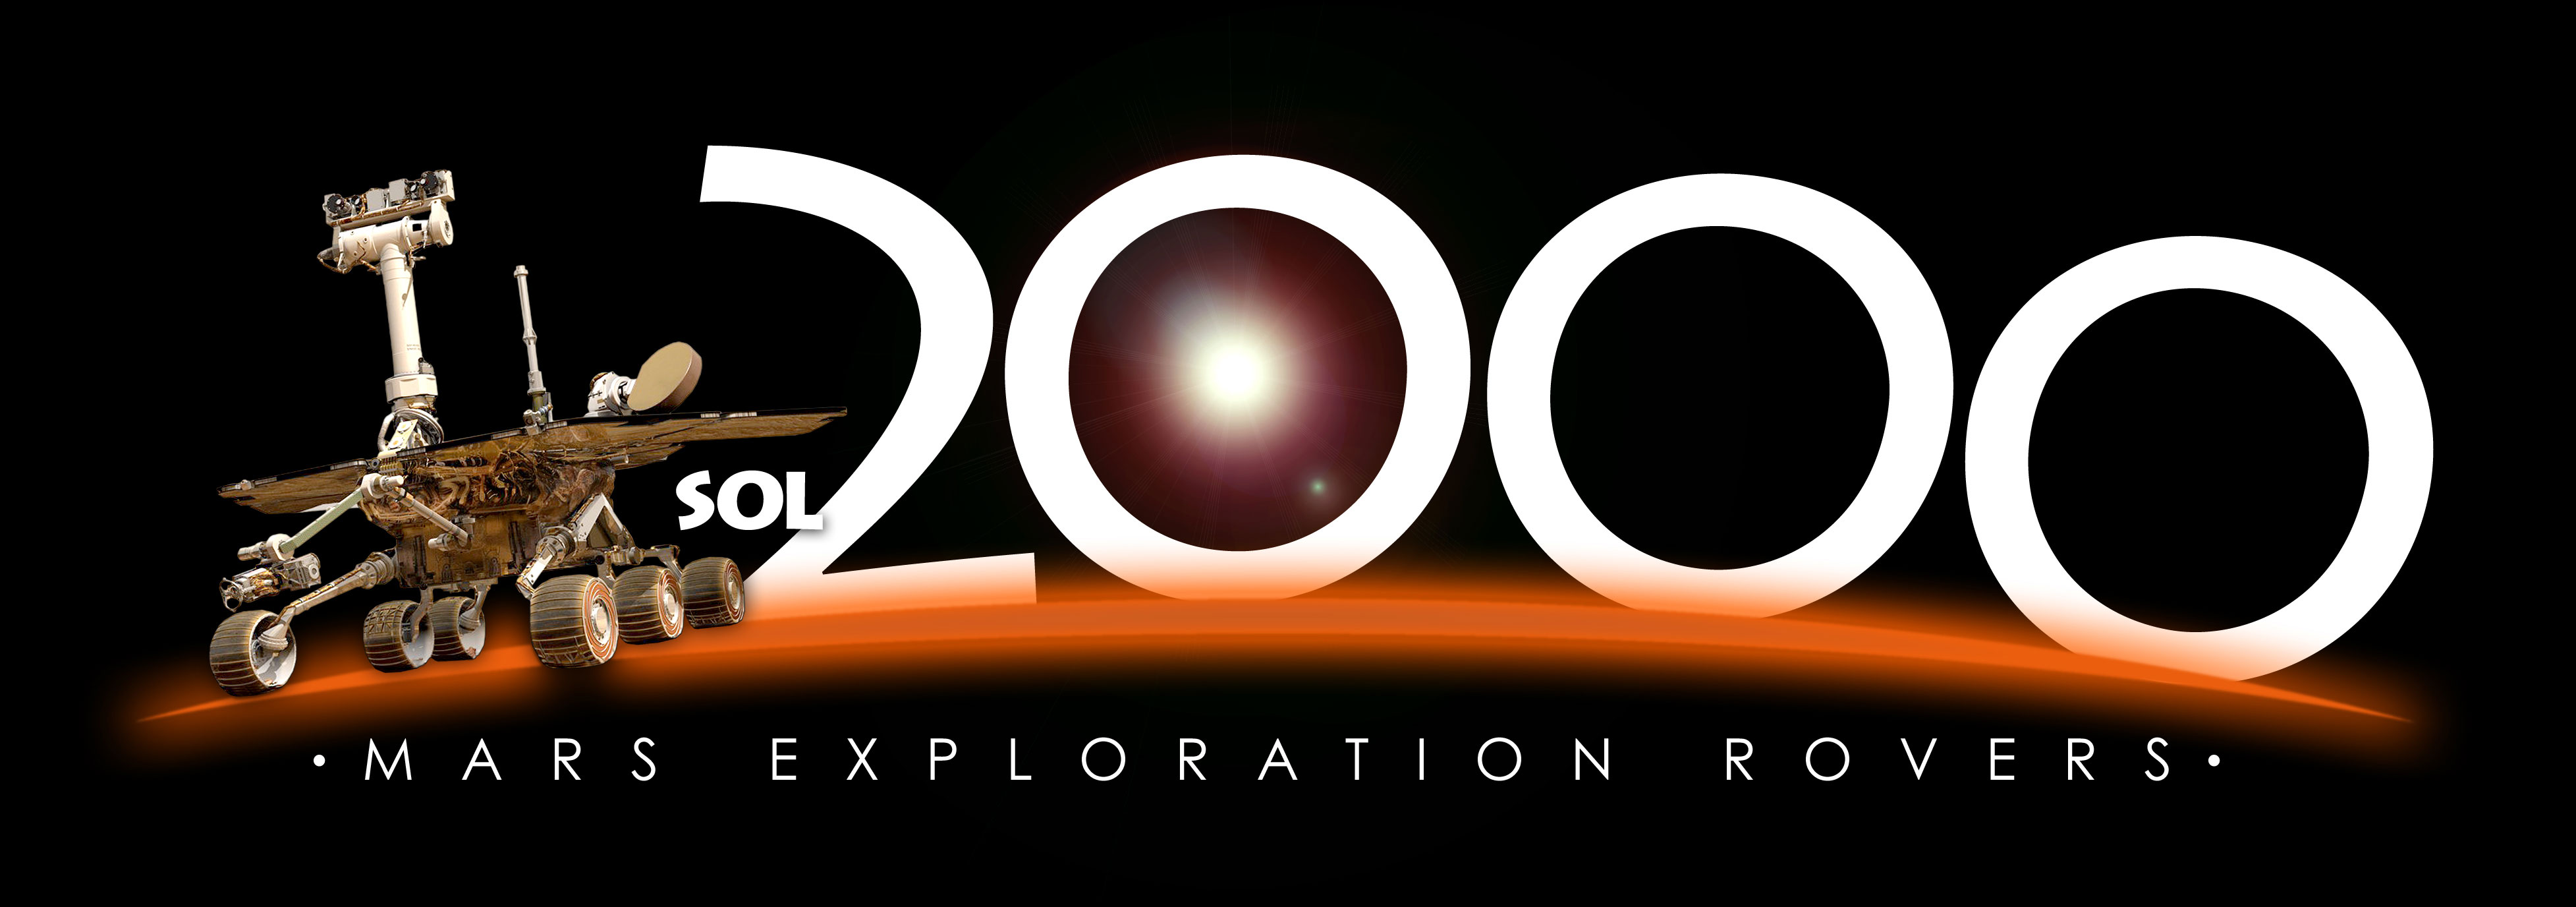 logo_sol2000_colour.jpg